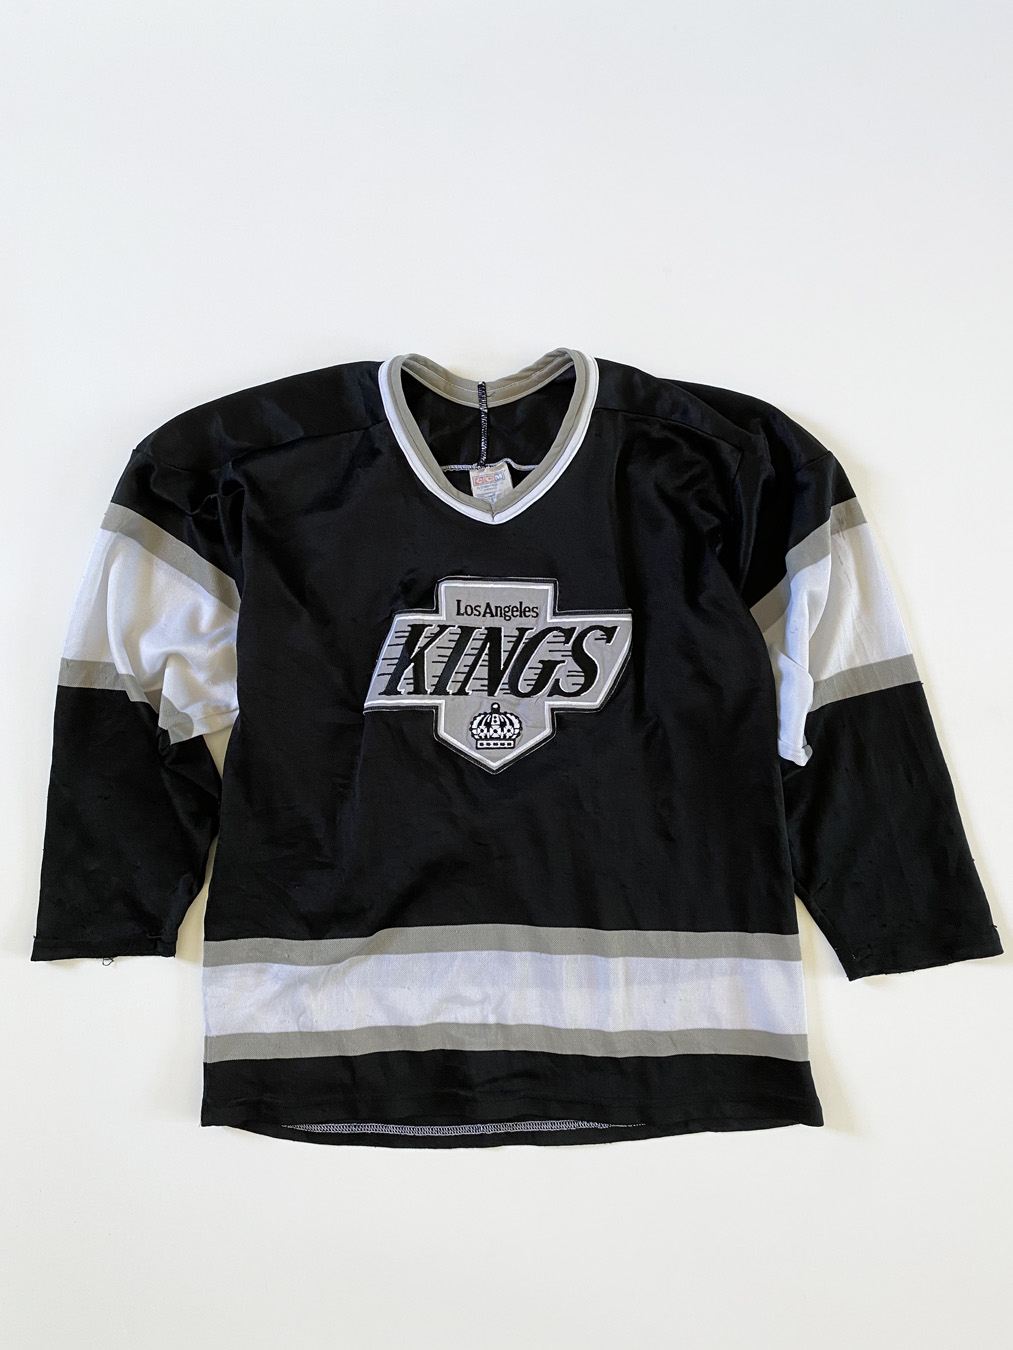 Authentic size 52/2xl CCM Center Ice LA Kings jersey 90s Original